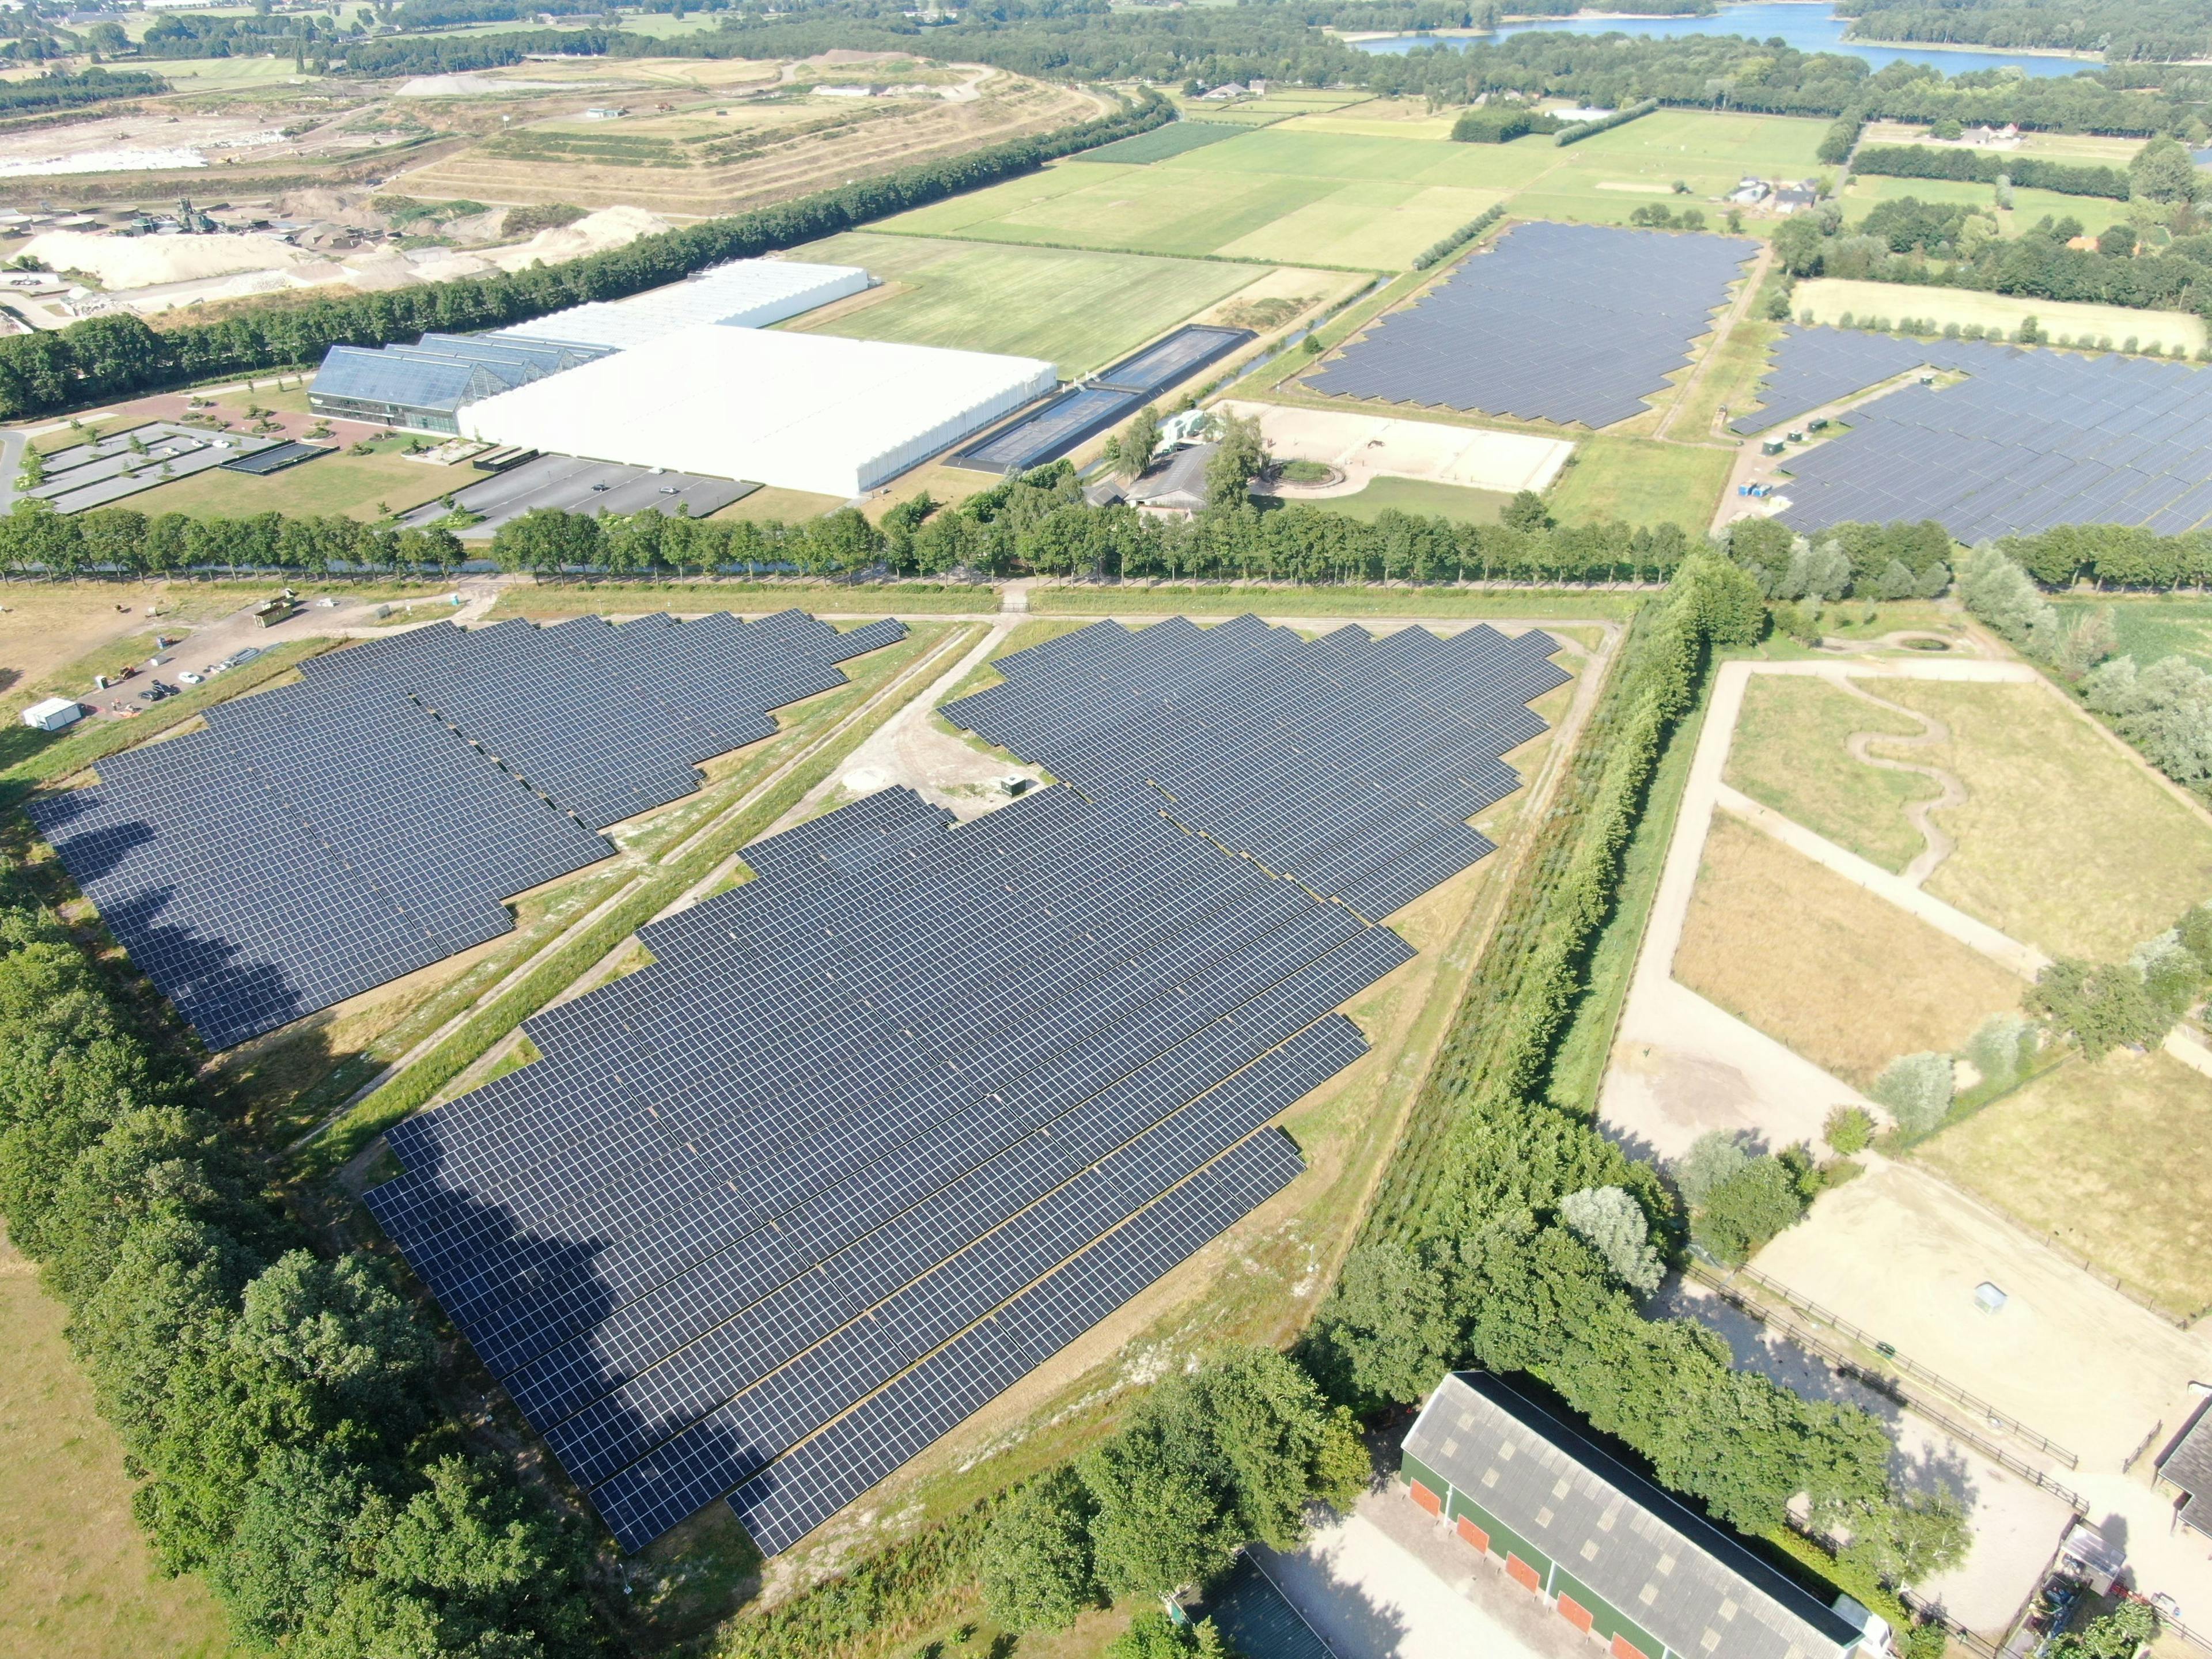 Geslau freefields project in Germany, taken by drone